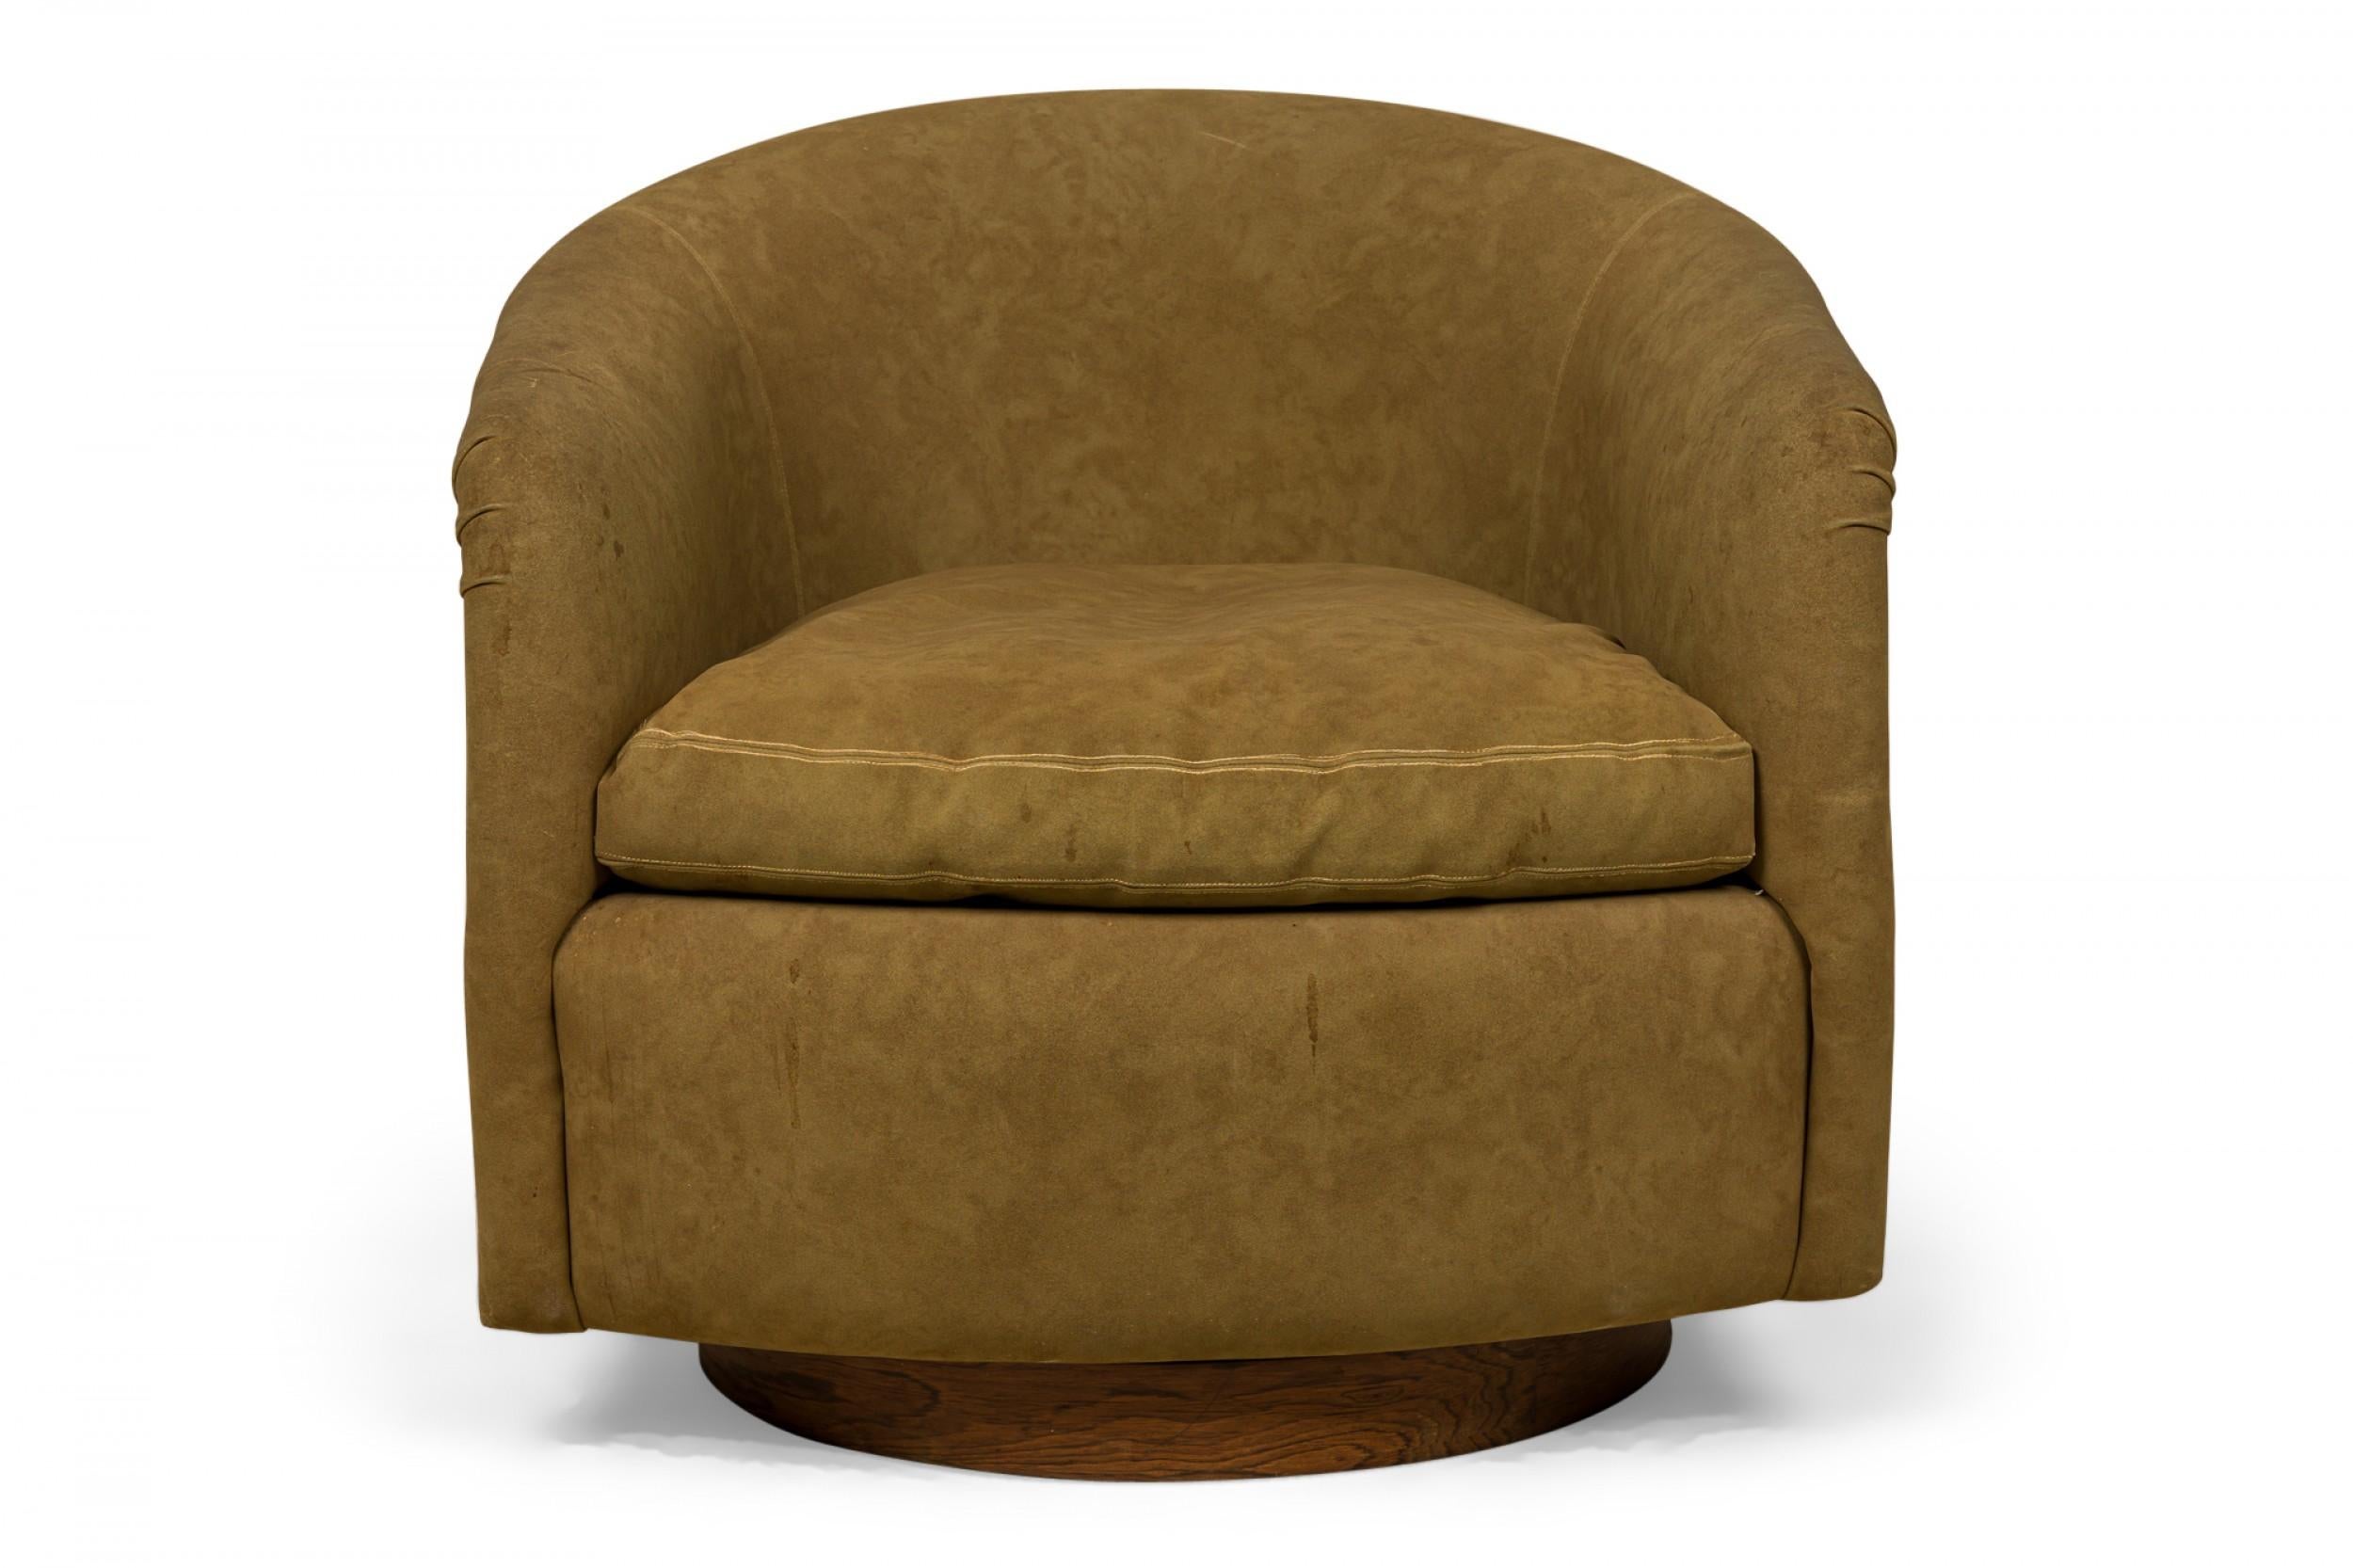 PAIRE de fauteuils de salon / d'accoudoir en forme de fer à cheval de style américain du milieu du siècle, recouverts de tissu brun kaki avec coussins d'assise amovibles. (MILO BAUGHMAN POUR THAYER COGGIN) (PRIX PAR PAIRE)